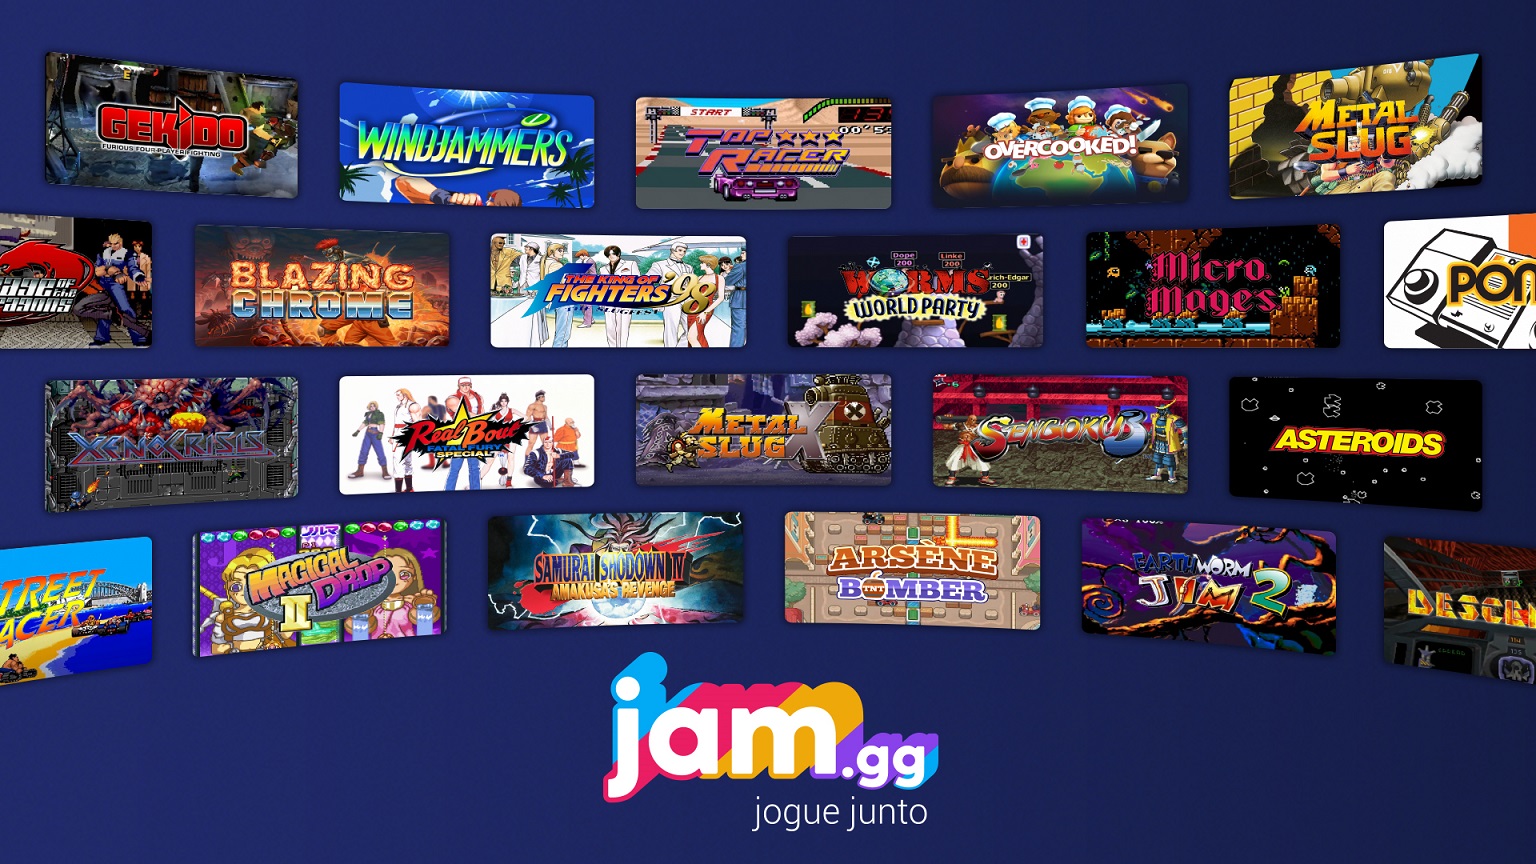 Jam.gg é a nova plataforma focada em jogos retrô